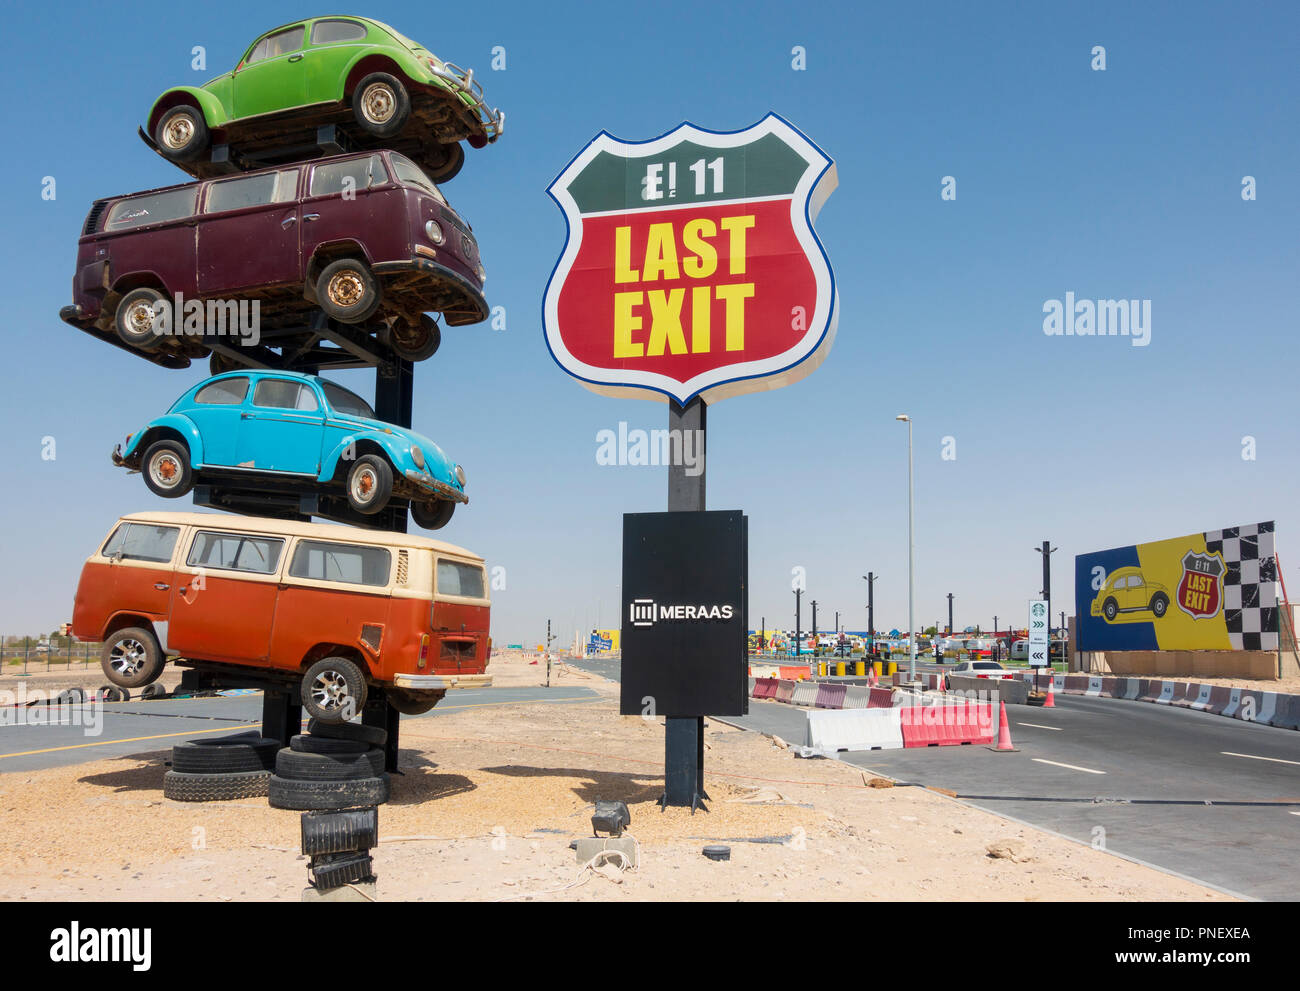 Vue d'une dernière sortie à thème américain fast-food drive-thru de service routier arrêt sur l'autoroute E11 entre Abu Dhabi et Dubaï, Émirats arabes unis, Émirats arabes unis Banque D'Images